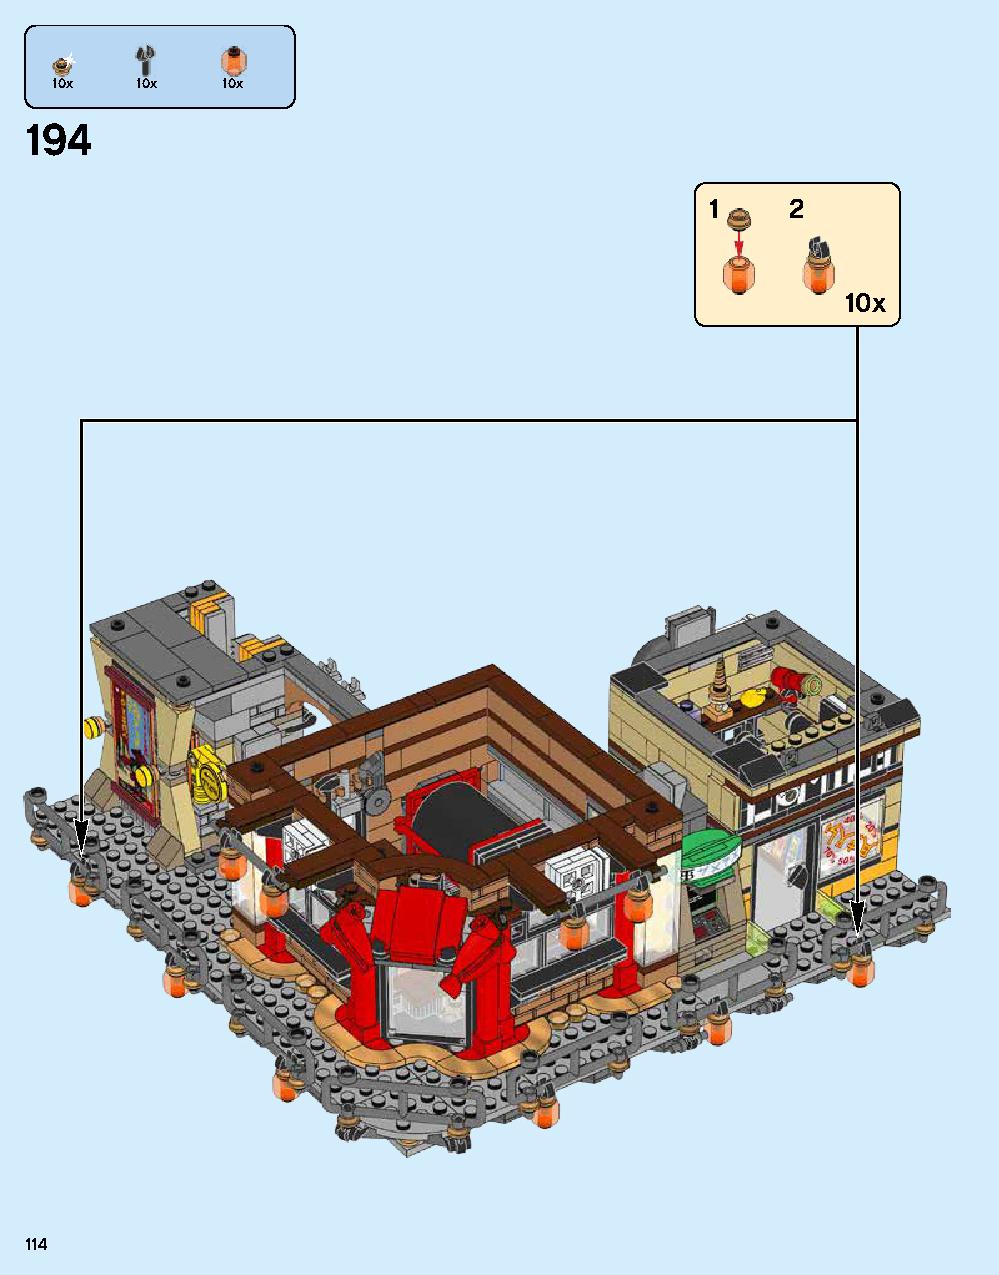 ニンジャゴー シティ 70620 レゴの商品情報 レゴの説明書・組立方法 114 page